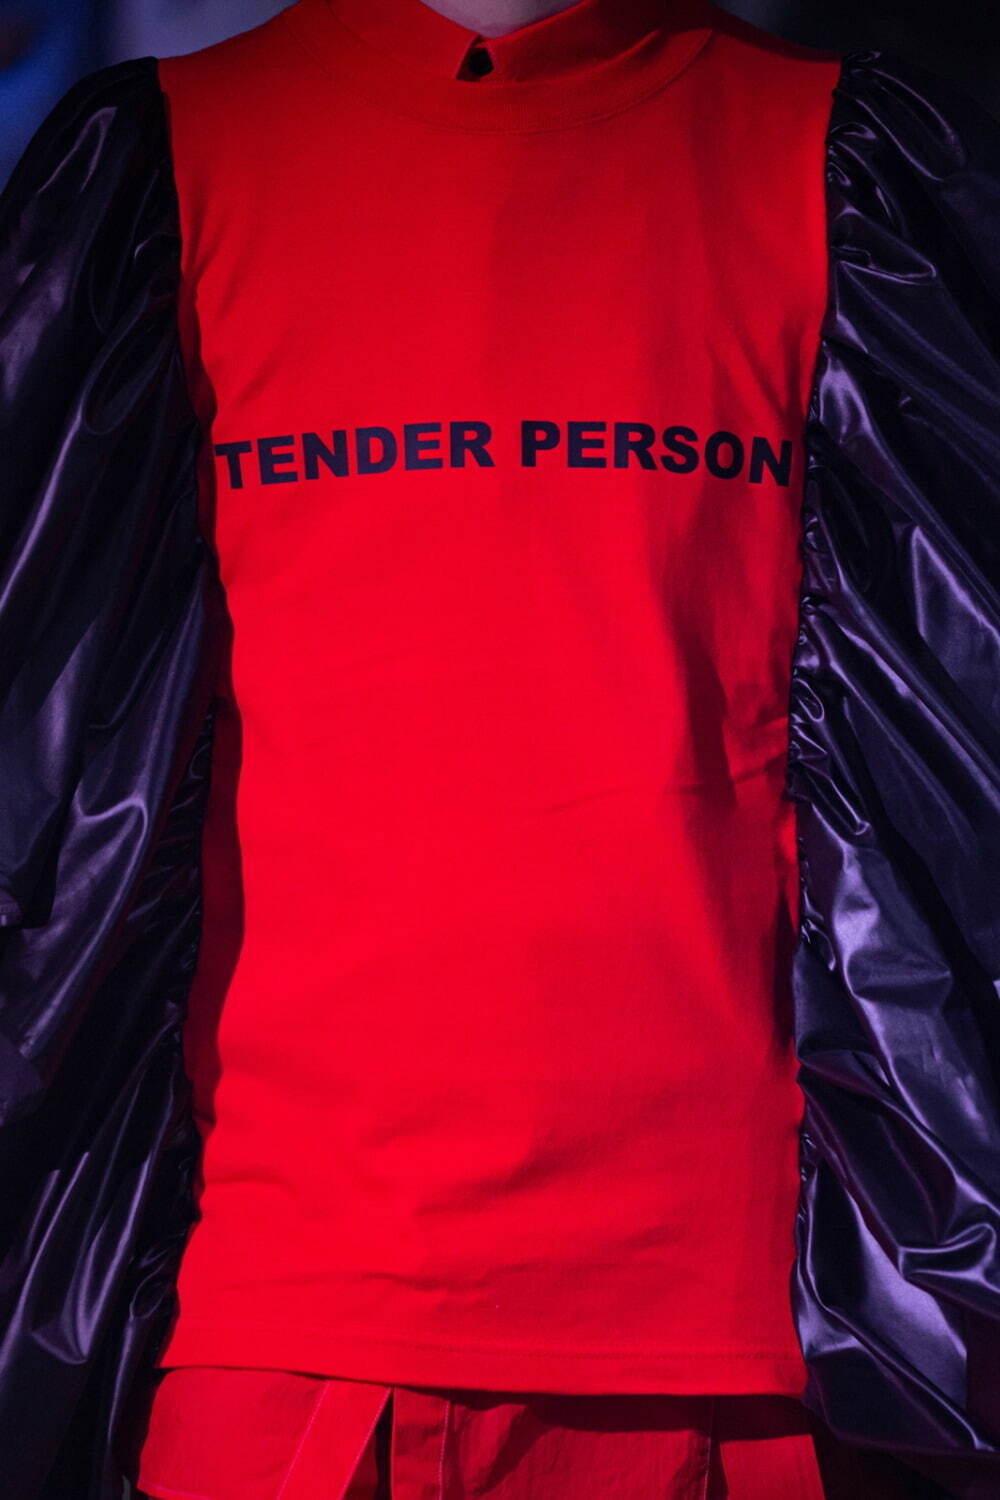 テンダーパーソン(TENDER PERSON) 2022年春夏ウィメンズ&メンズコレクション  - 写真38